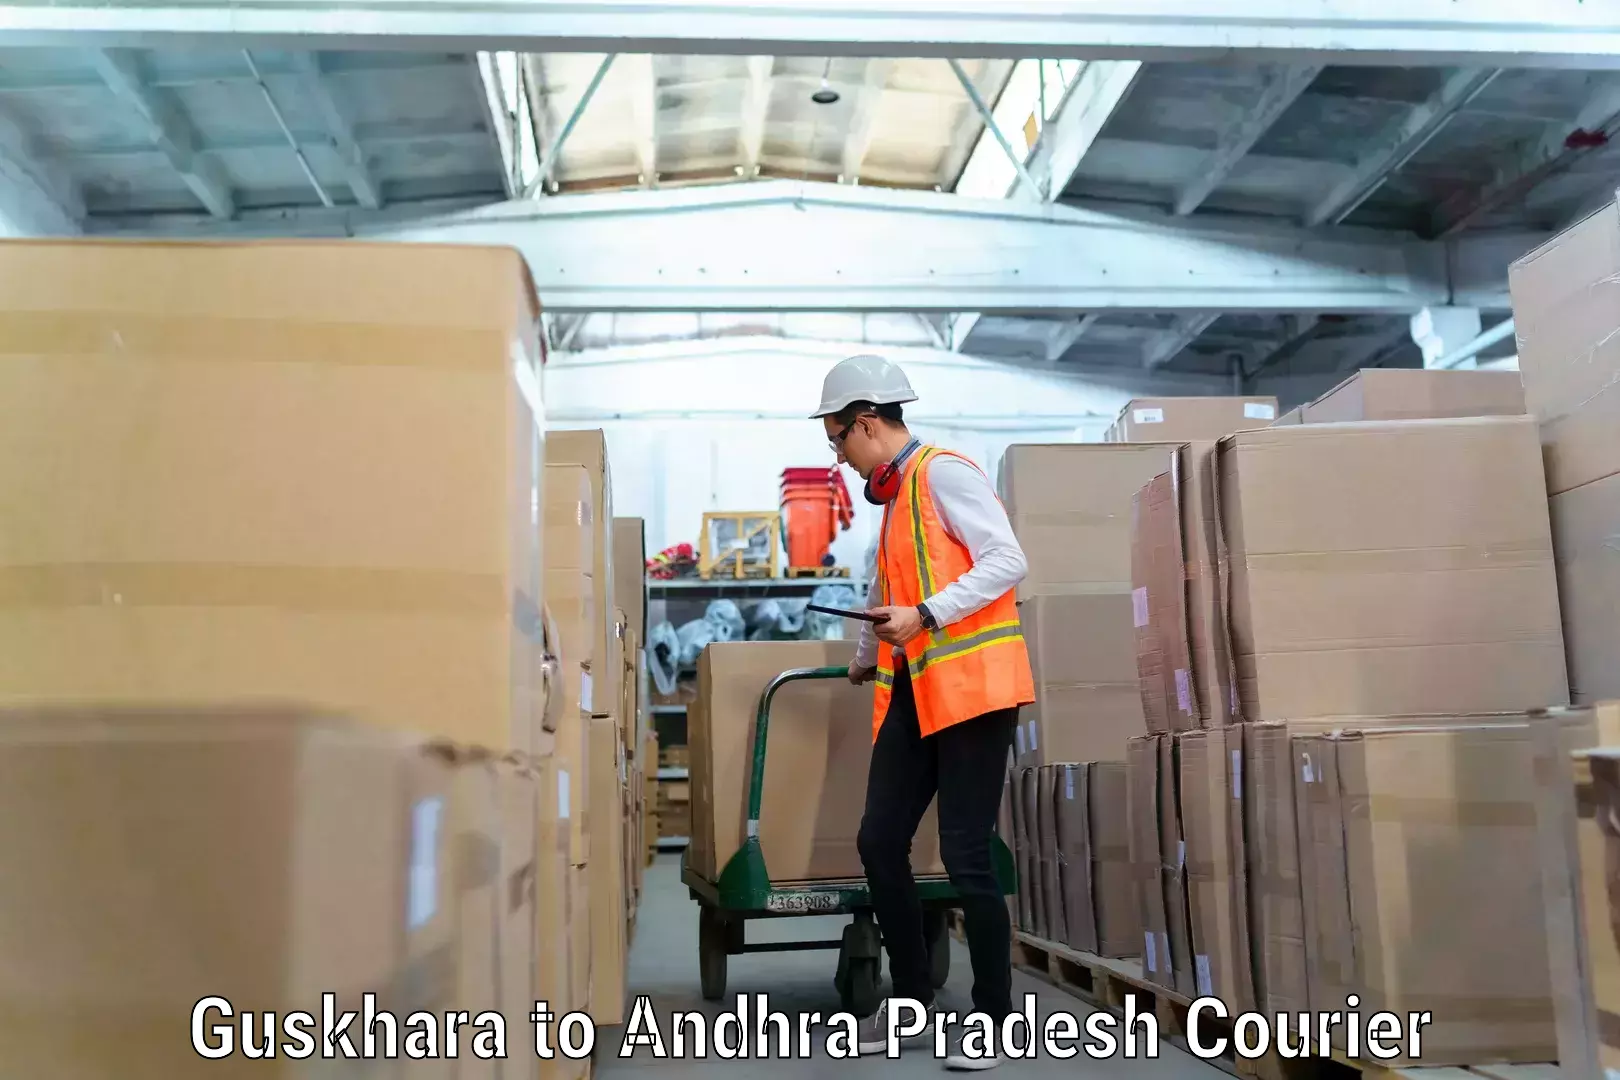 Trusted moving company Guskhara to Andhra Pradesh